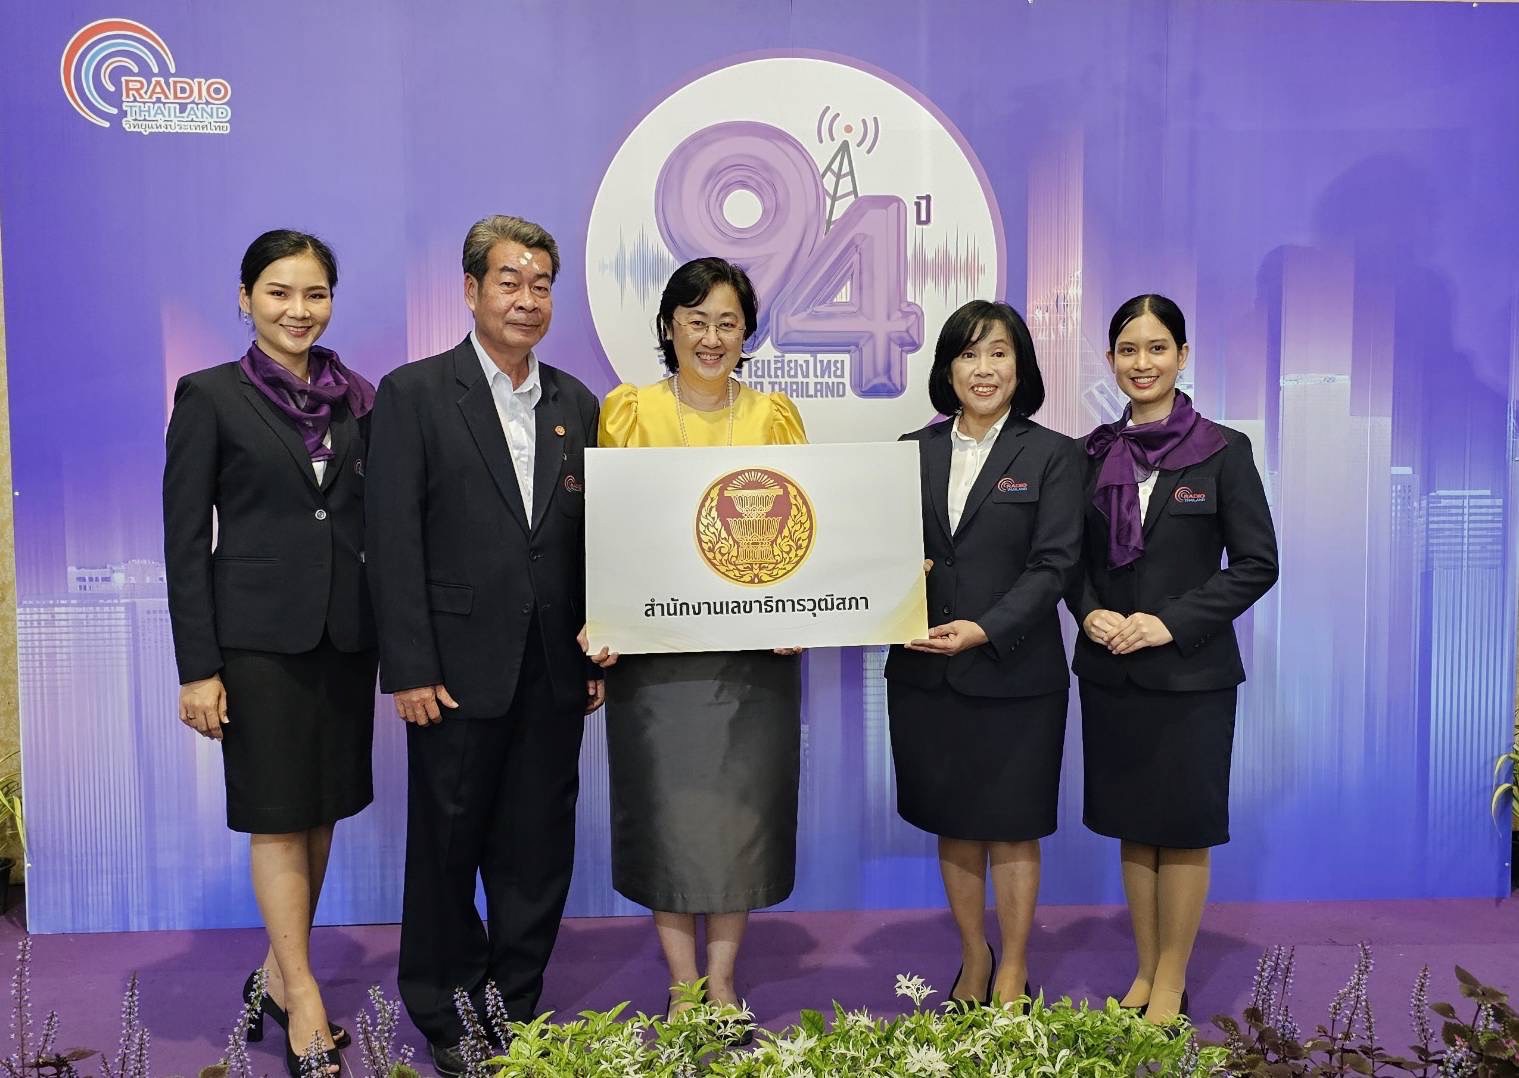 ผู้แทน สนง. วุฒิสภา ร่วมแสดงความยินดี เนื่องในโอกาสงาน “94 ปี วิทยุกระจายเสียงไทย”